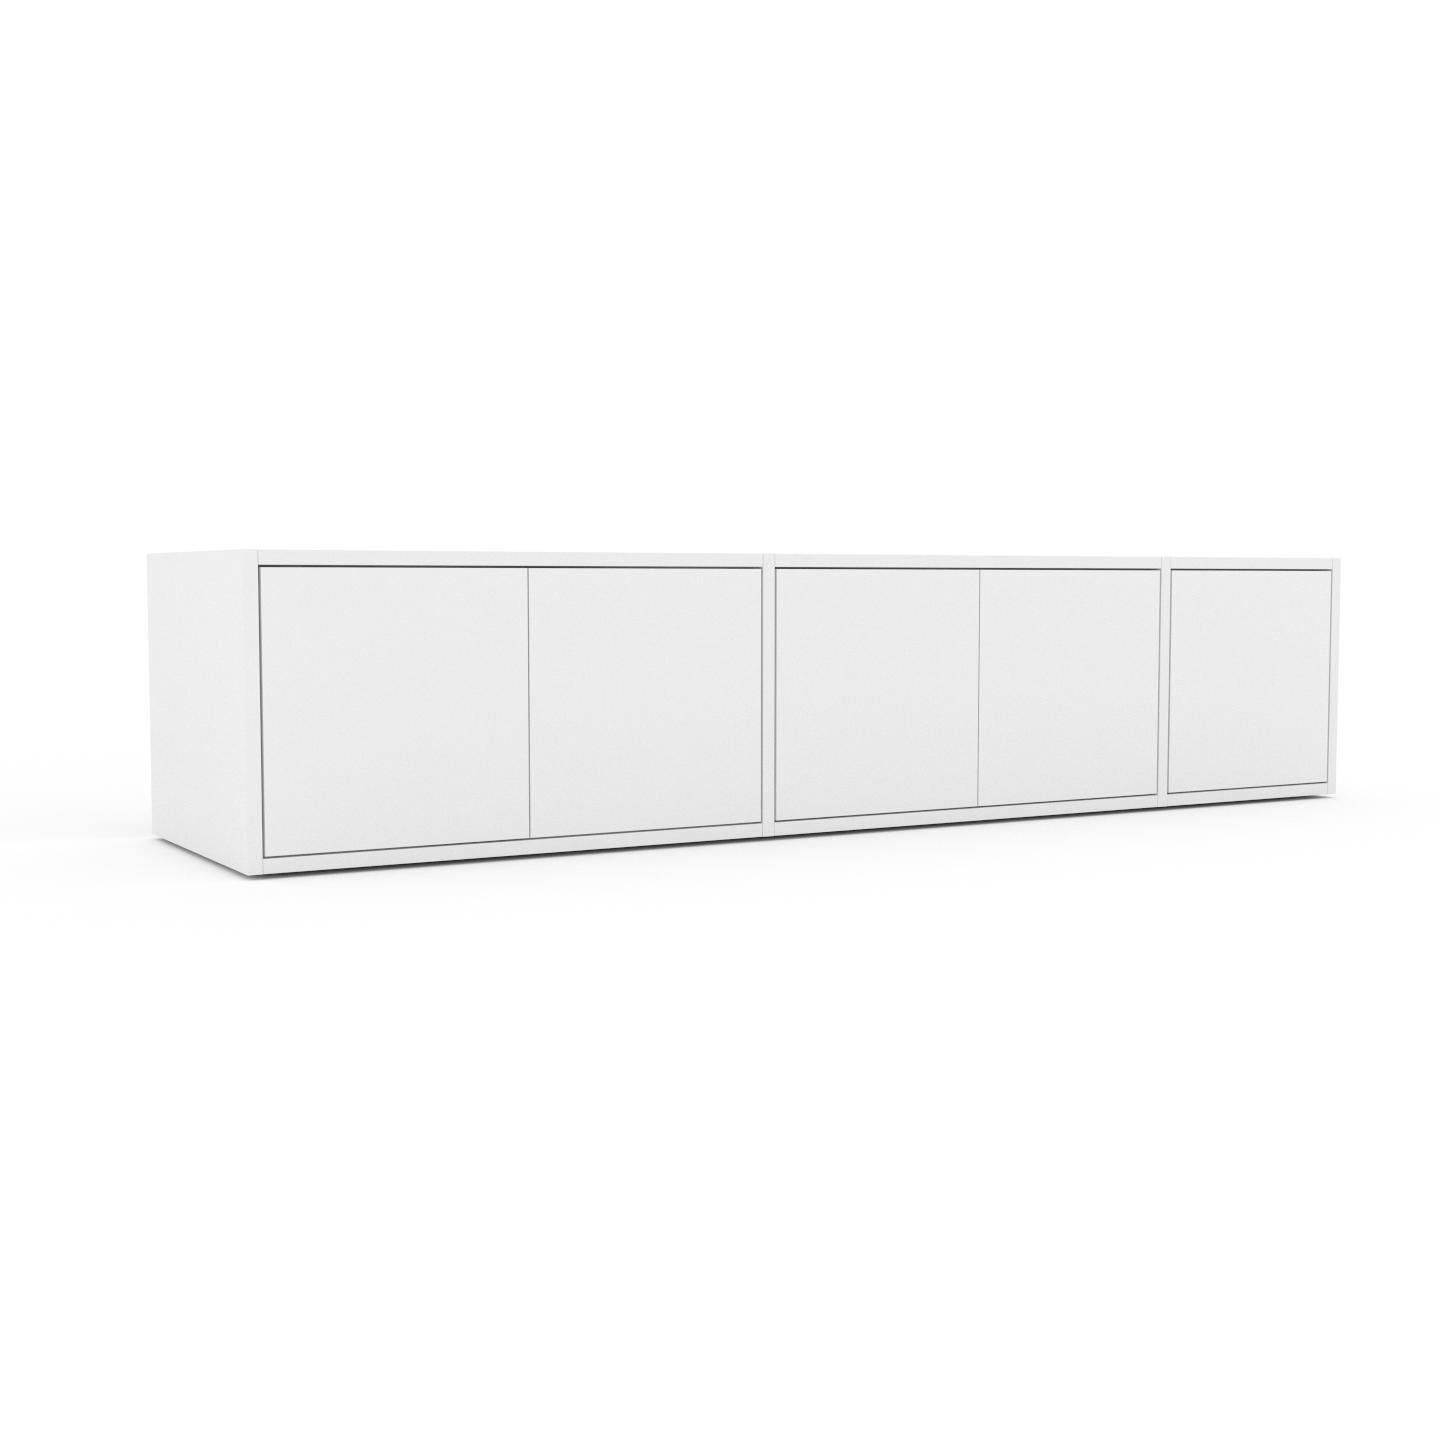 MYCS Bücherregal Weiß - Modernes Regal für Bücher: Türen in Weiß - 190 x 41 x 47 cm, Individuell konfigurierbar